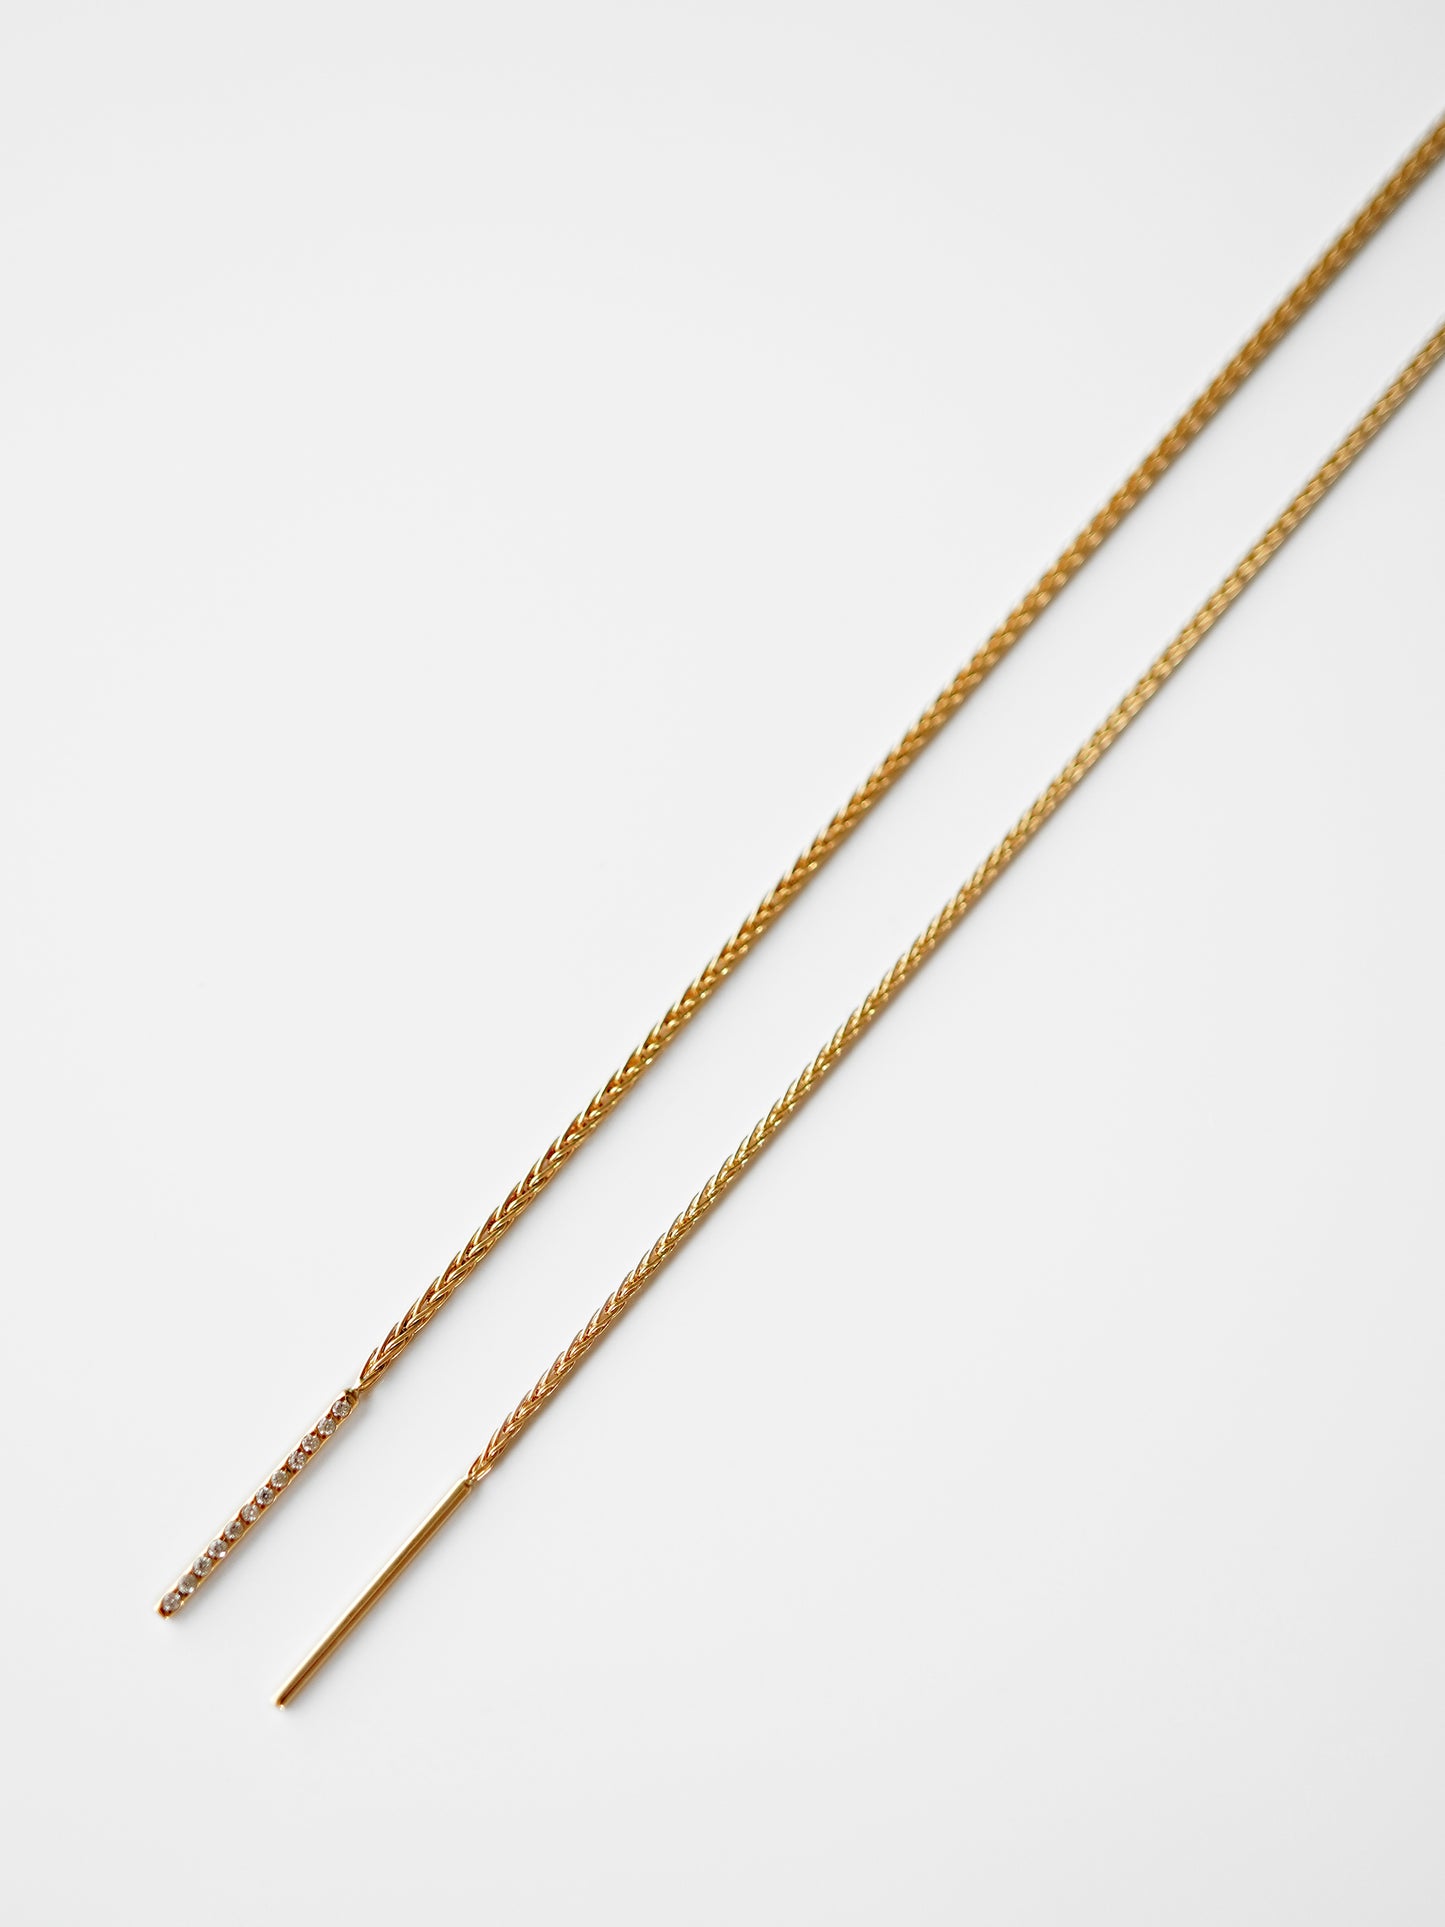 種類は2パターン。左側 : 太めのチェーンとダイヤ付きのピン「Spiga11」、右側 : 地金のみで構成された細めのチェーンを使用した「Spiga09」。